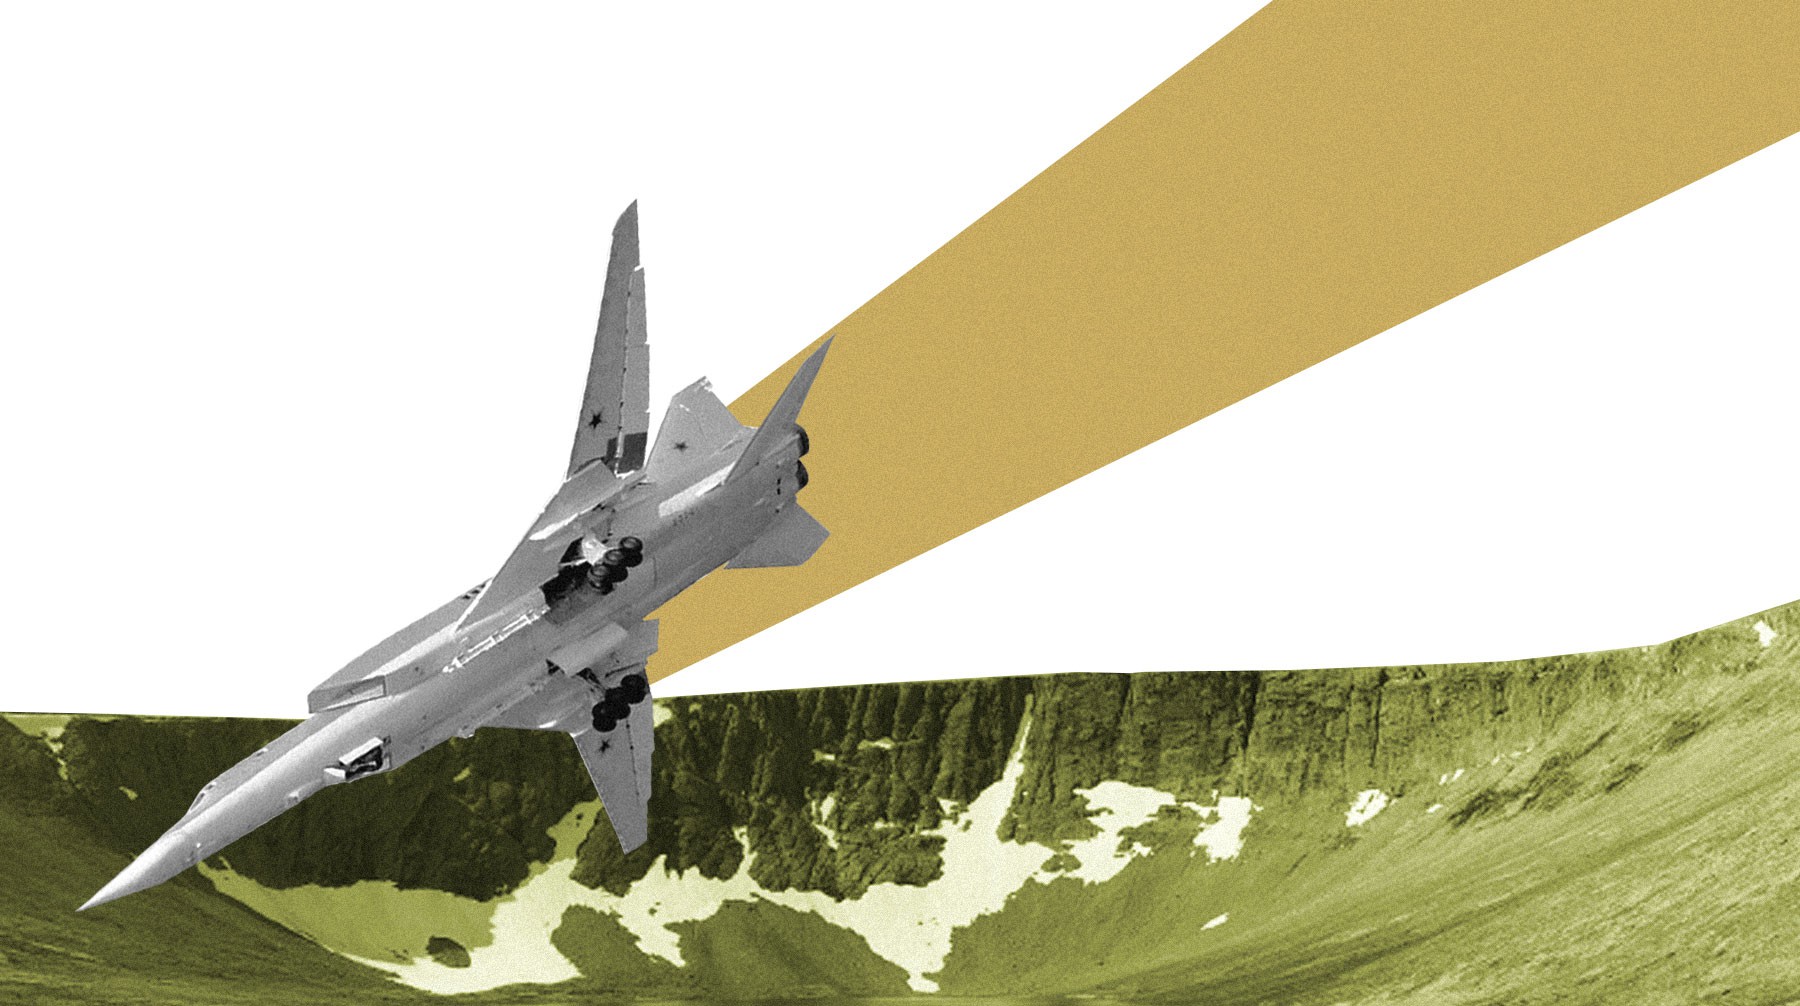 Dailystorm - В Заполярье разбился бомбардировщик Ту-22М3. Что мы знаем об этом самолете?